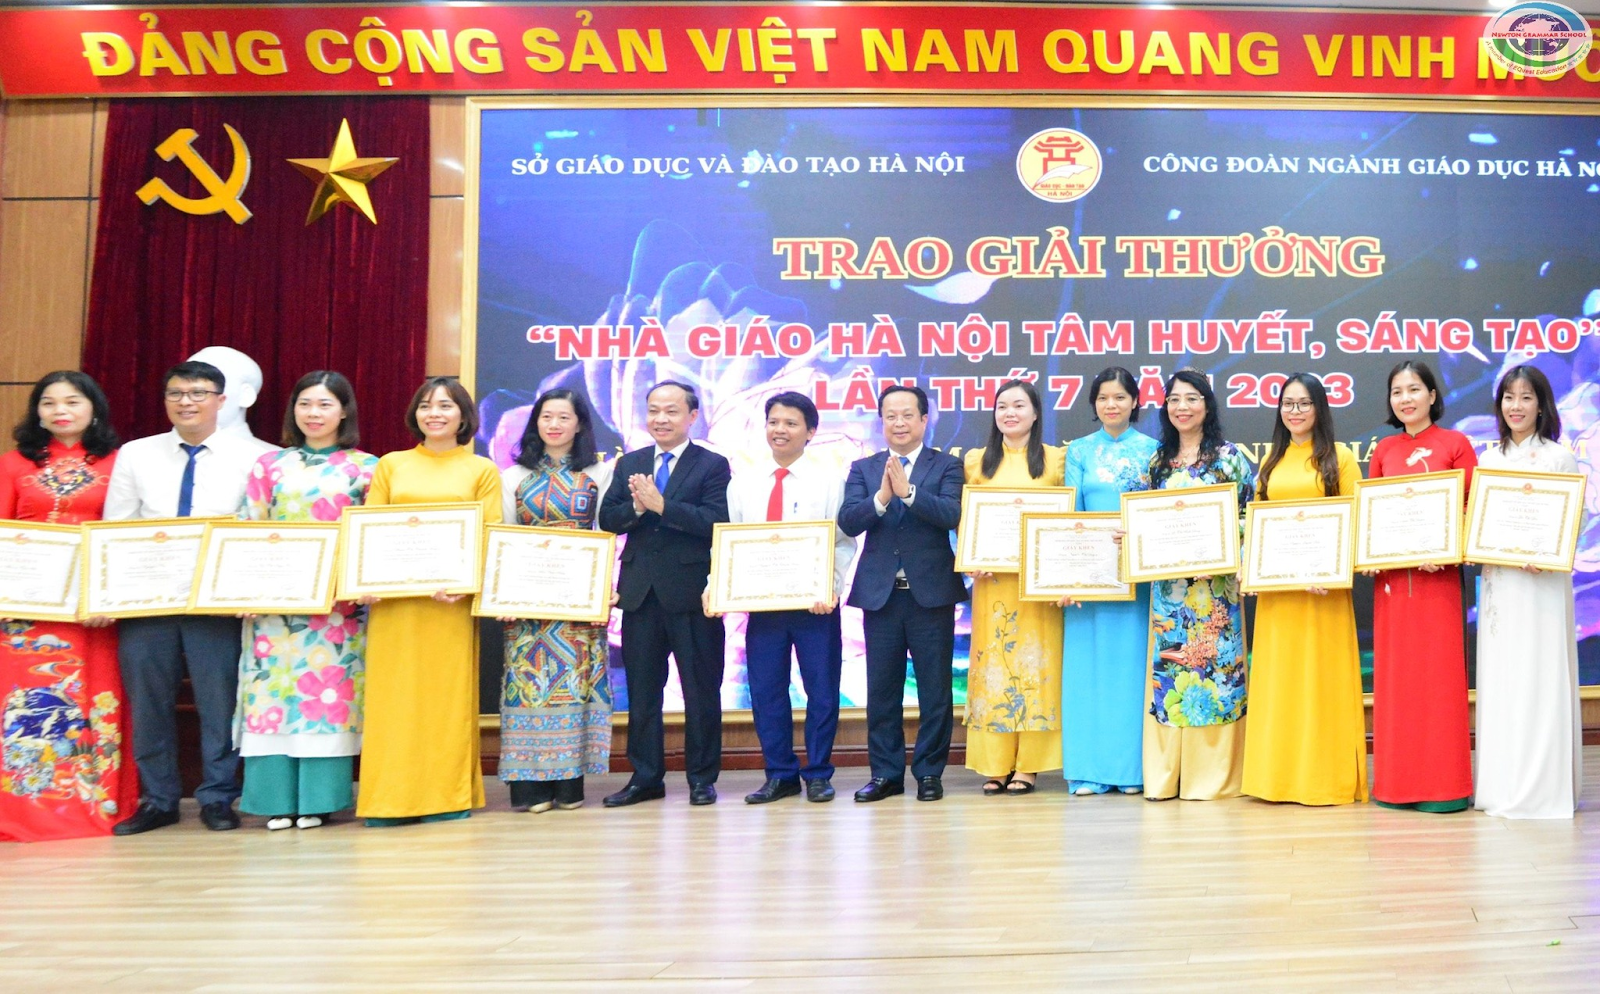 Nhà giáo Lê Thị Bích Dung (Thứ 4 từ bên phải qua) nhận Giải thưởng “Nhà giáo Hà Nội tâm huyết, sáng tạo” lần thứ 7 năm 2023.